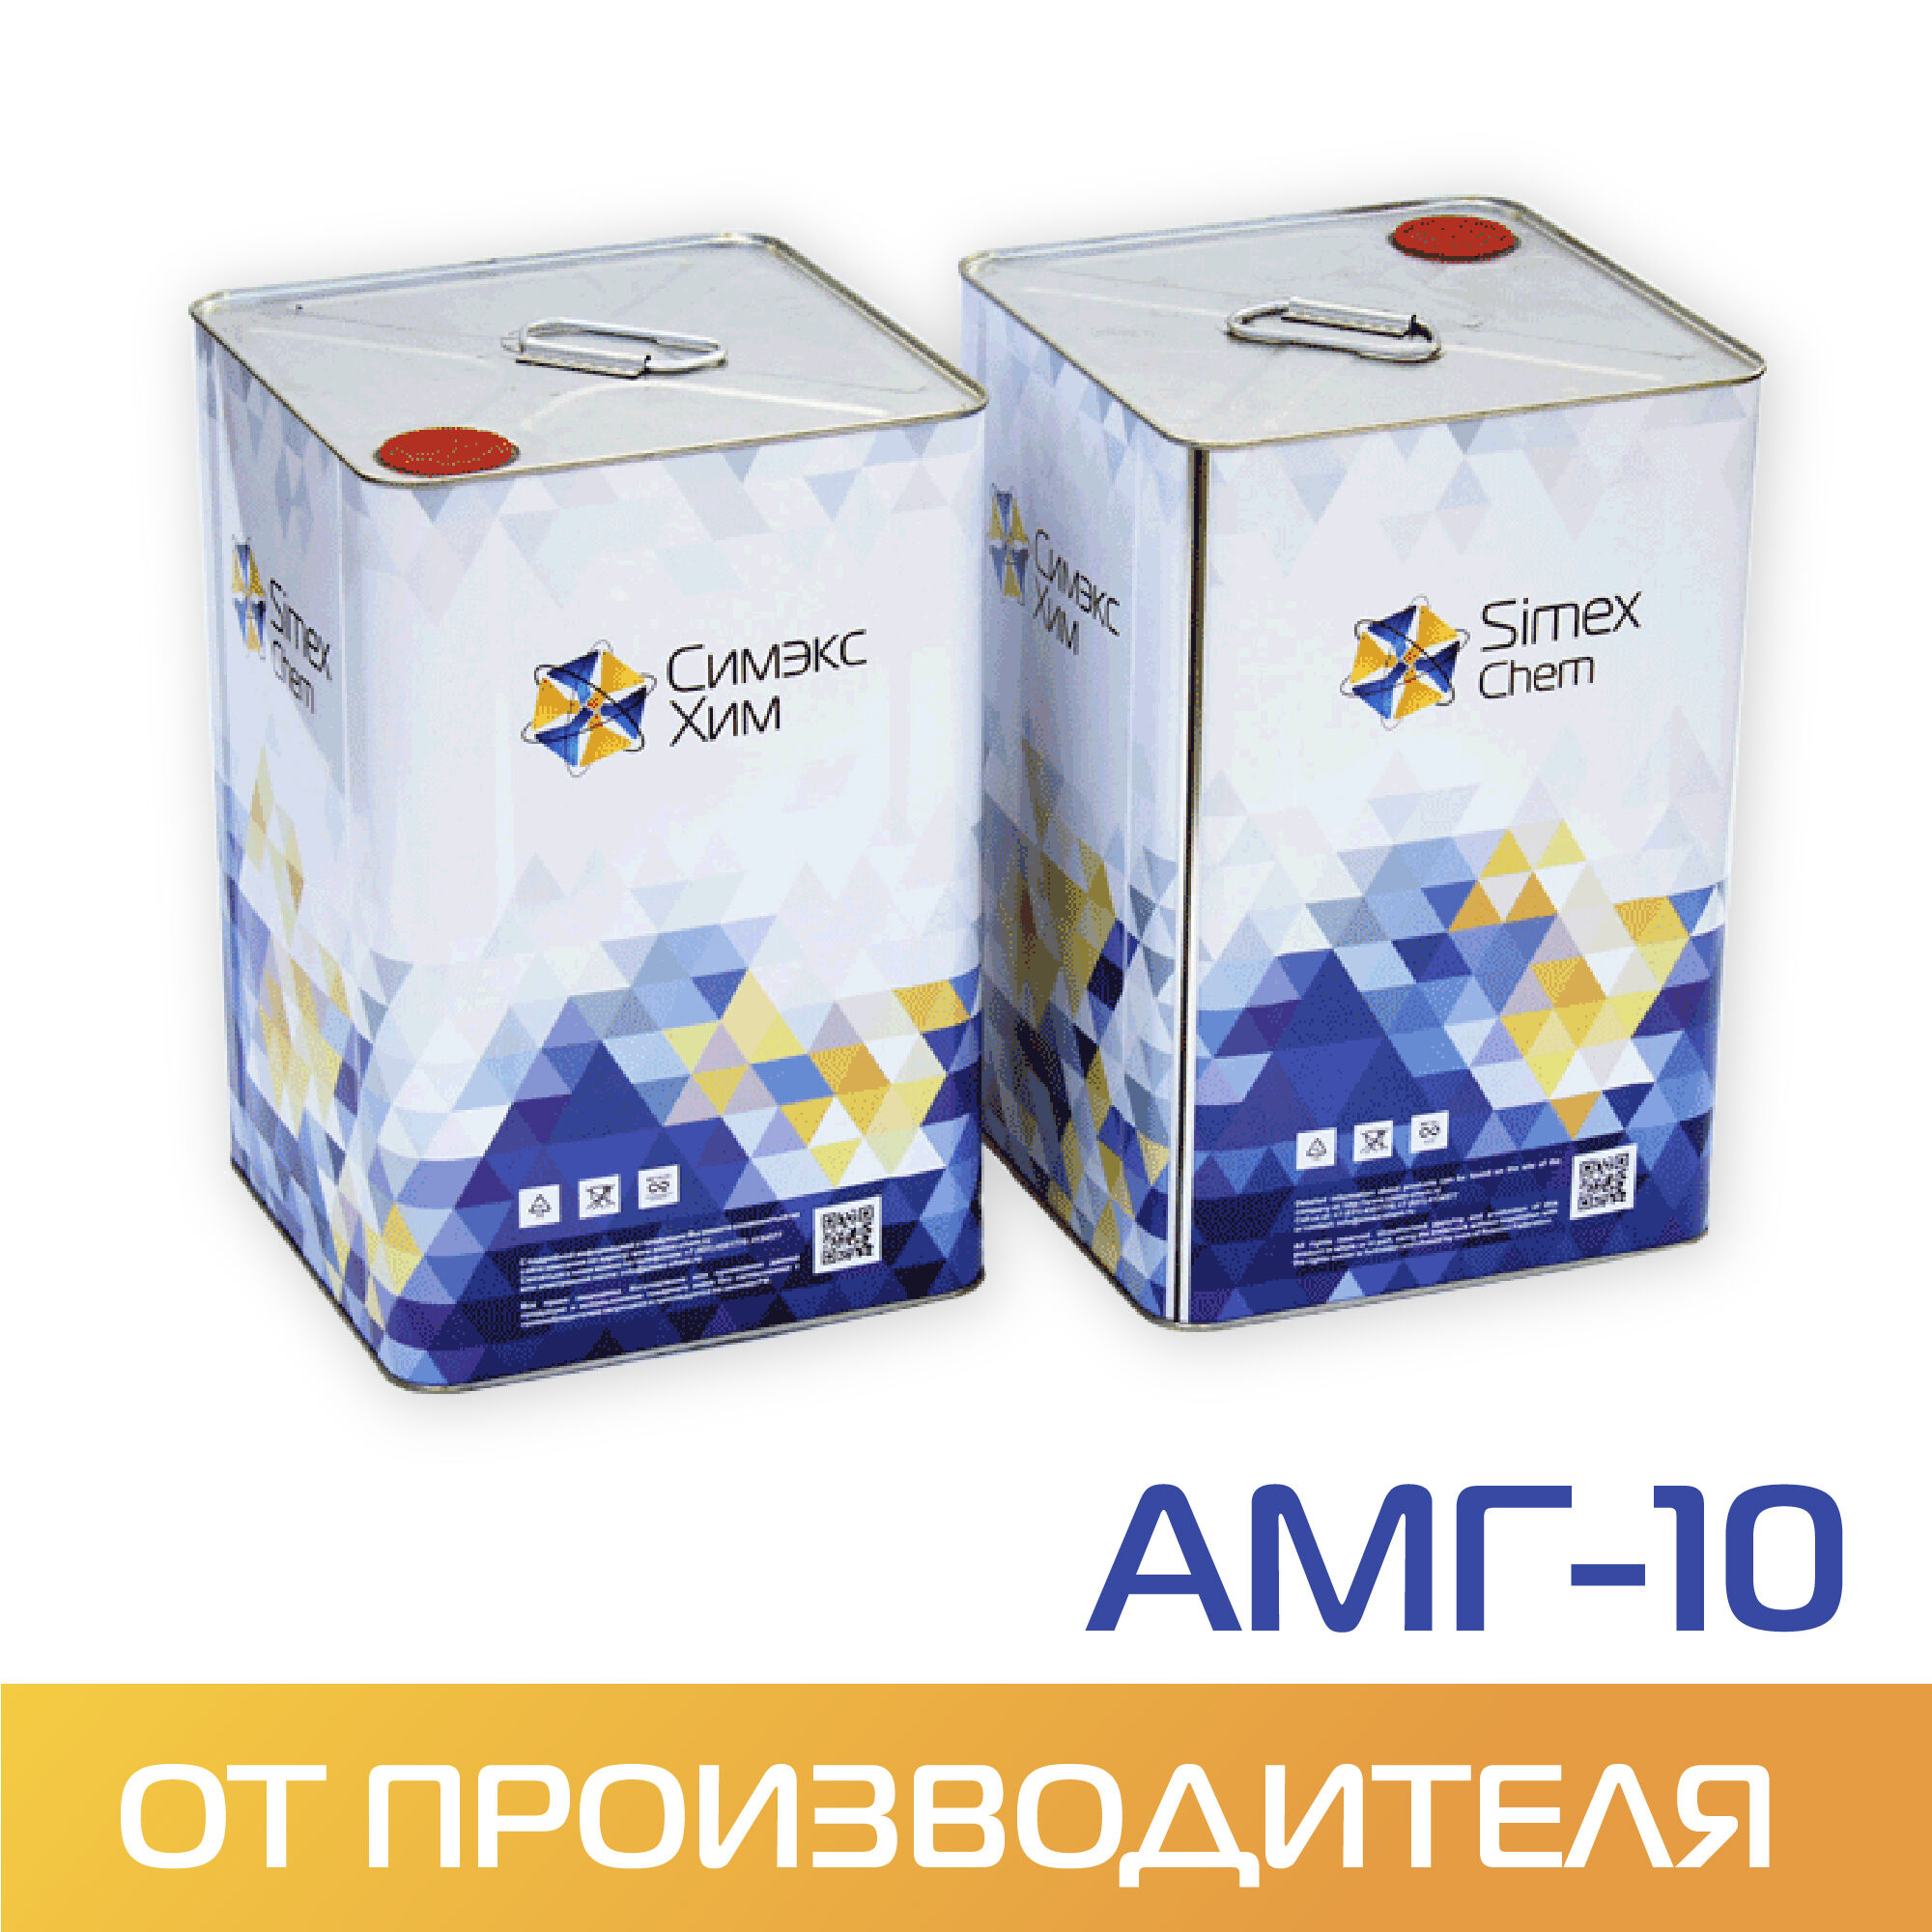 Масло для гидравлических систем АМГ-10 бидон 14 кг